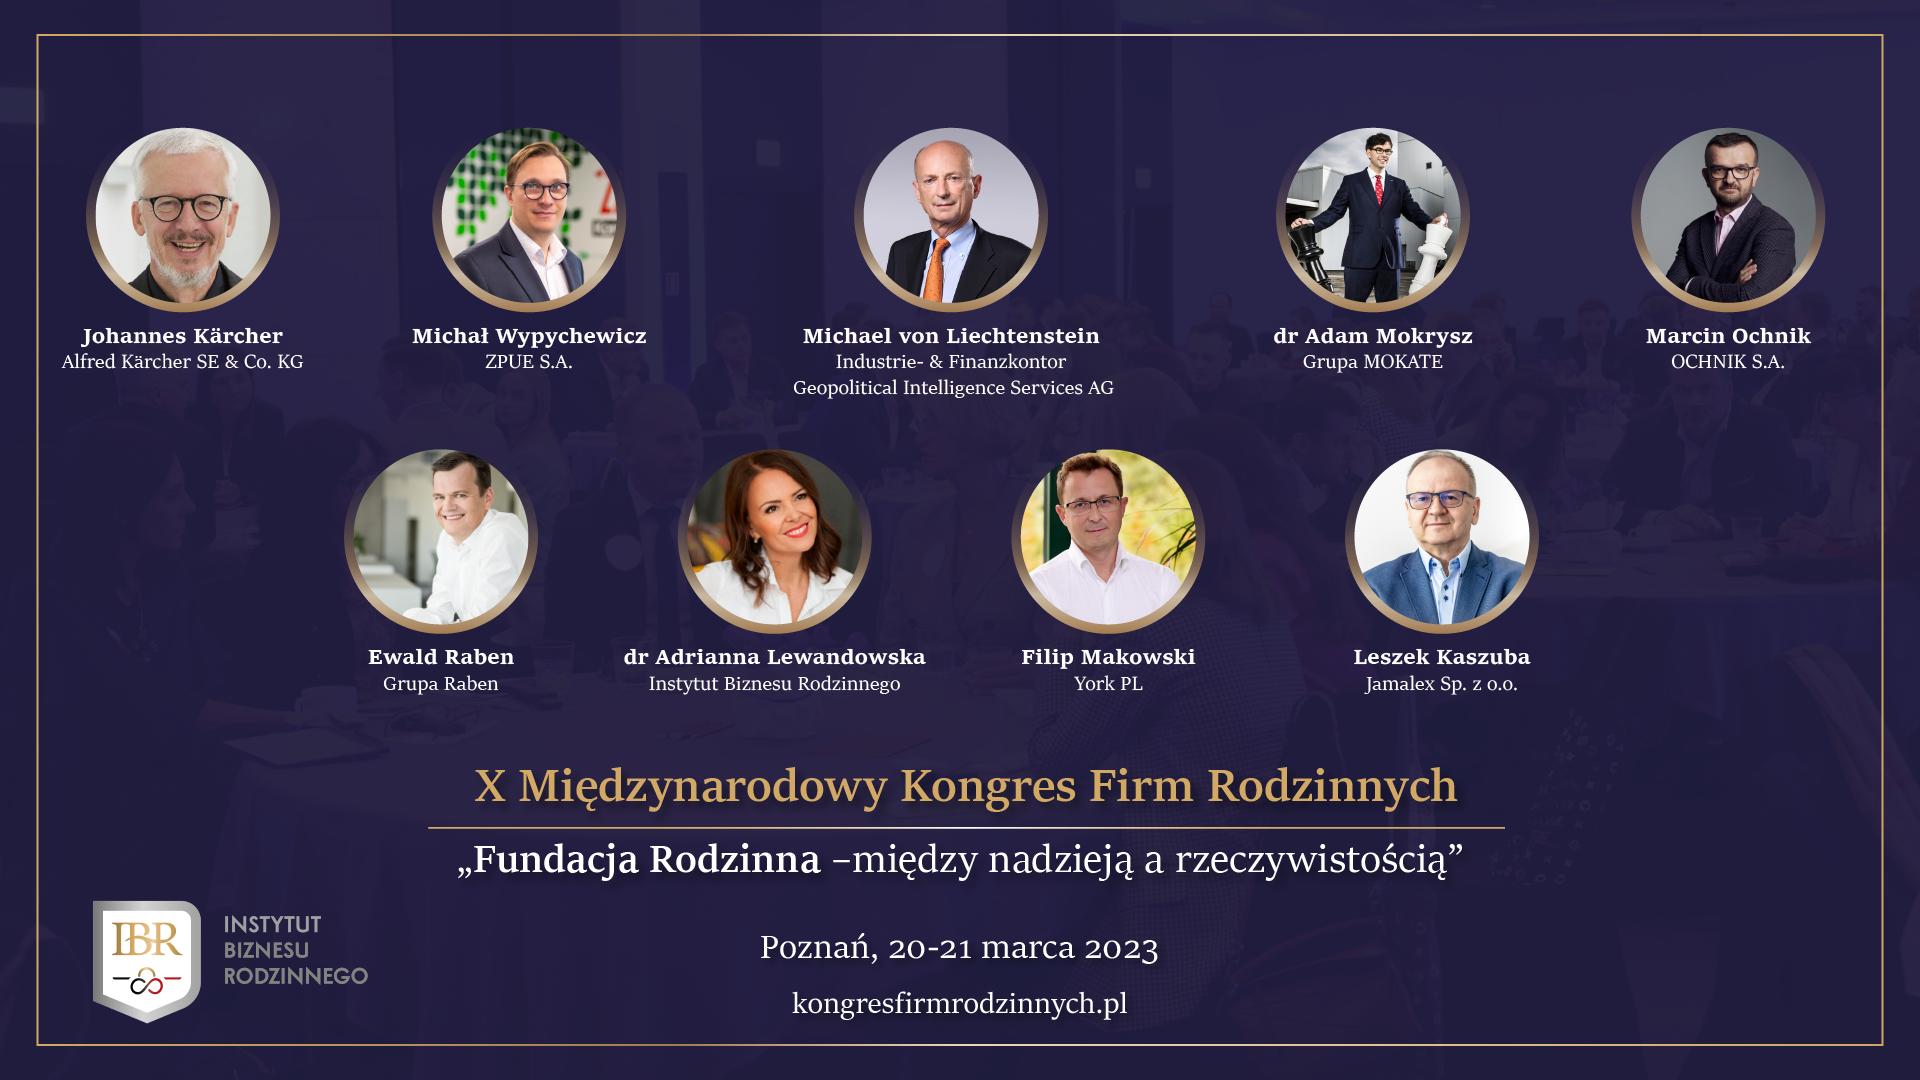 X Międzynarodowy Kongres Firm Rodzinnych odbędzie się w Poznaniu